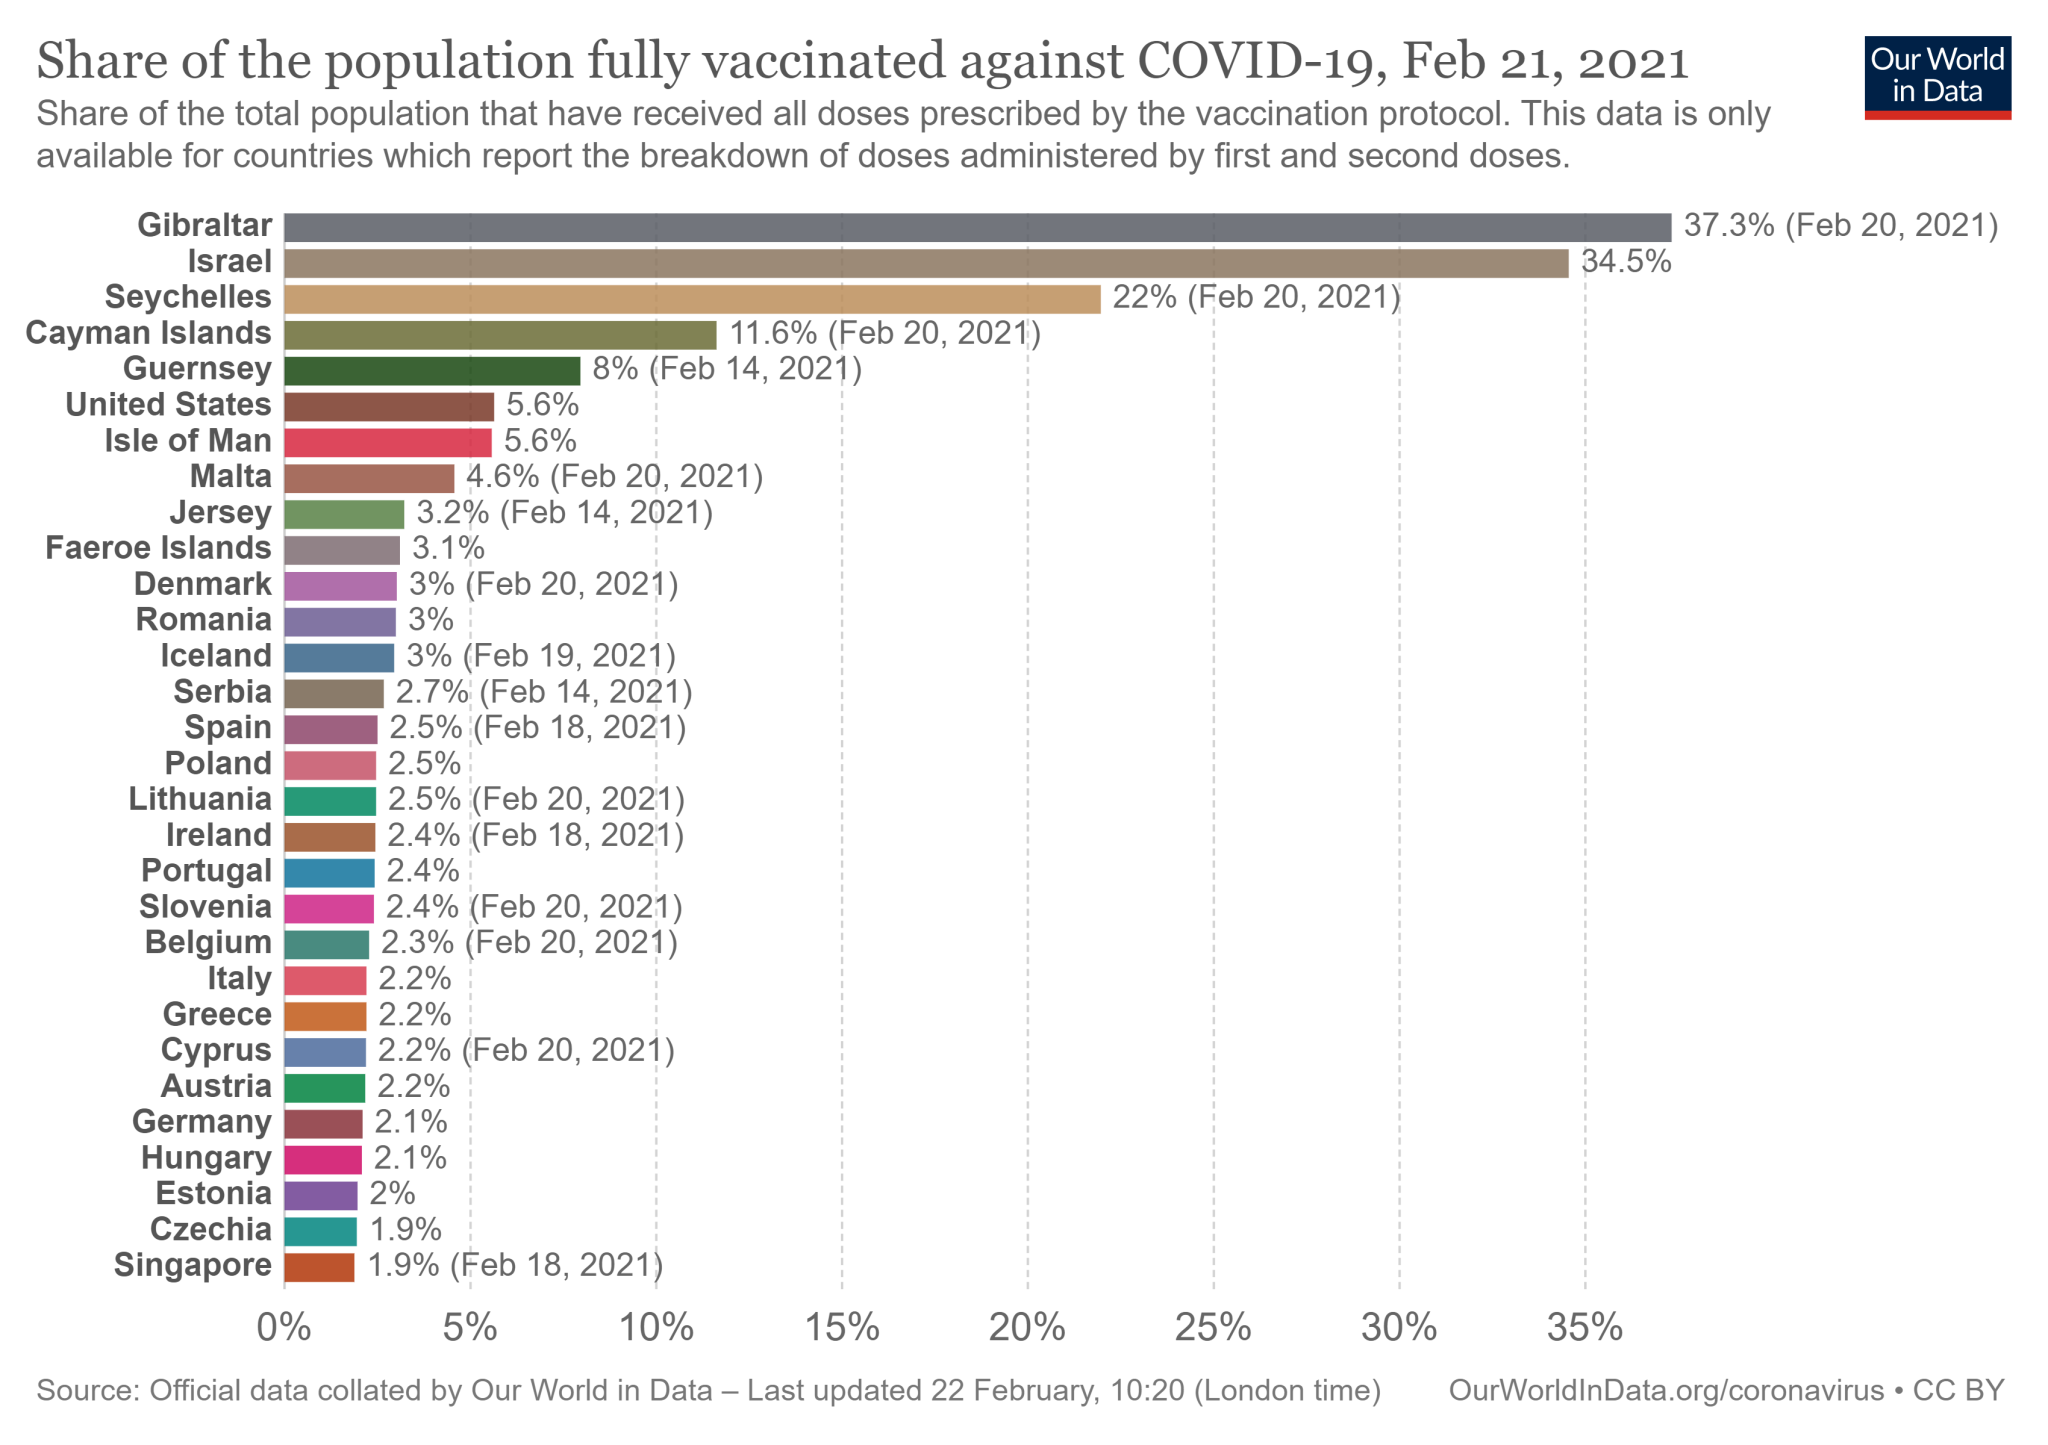 Polska wśród 30 państw z najwyższym odsetkiem obywateli w pełni zaszczepionych przeciw COVID-19 (dane dostępne na 22 lutego 2021)